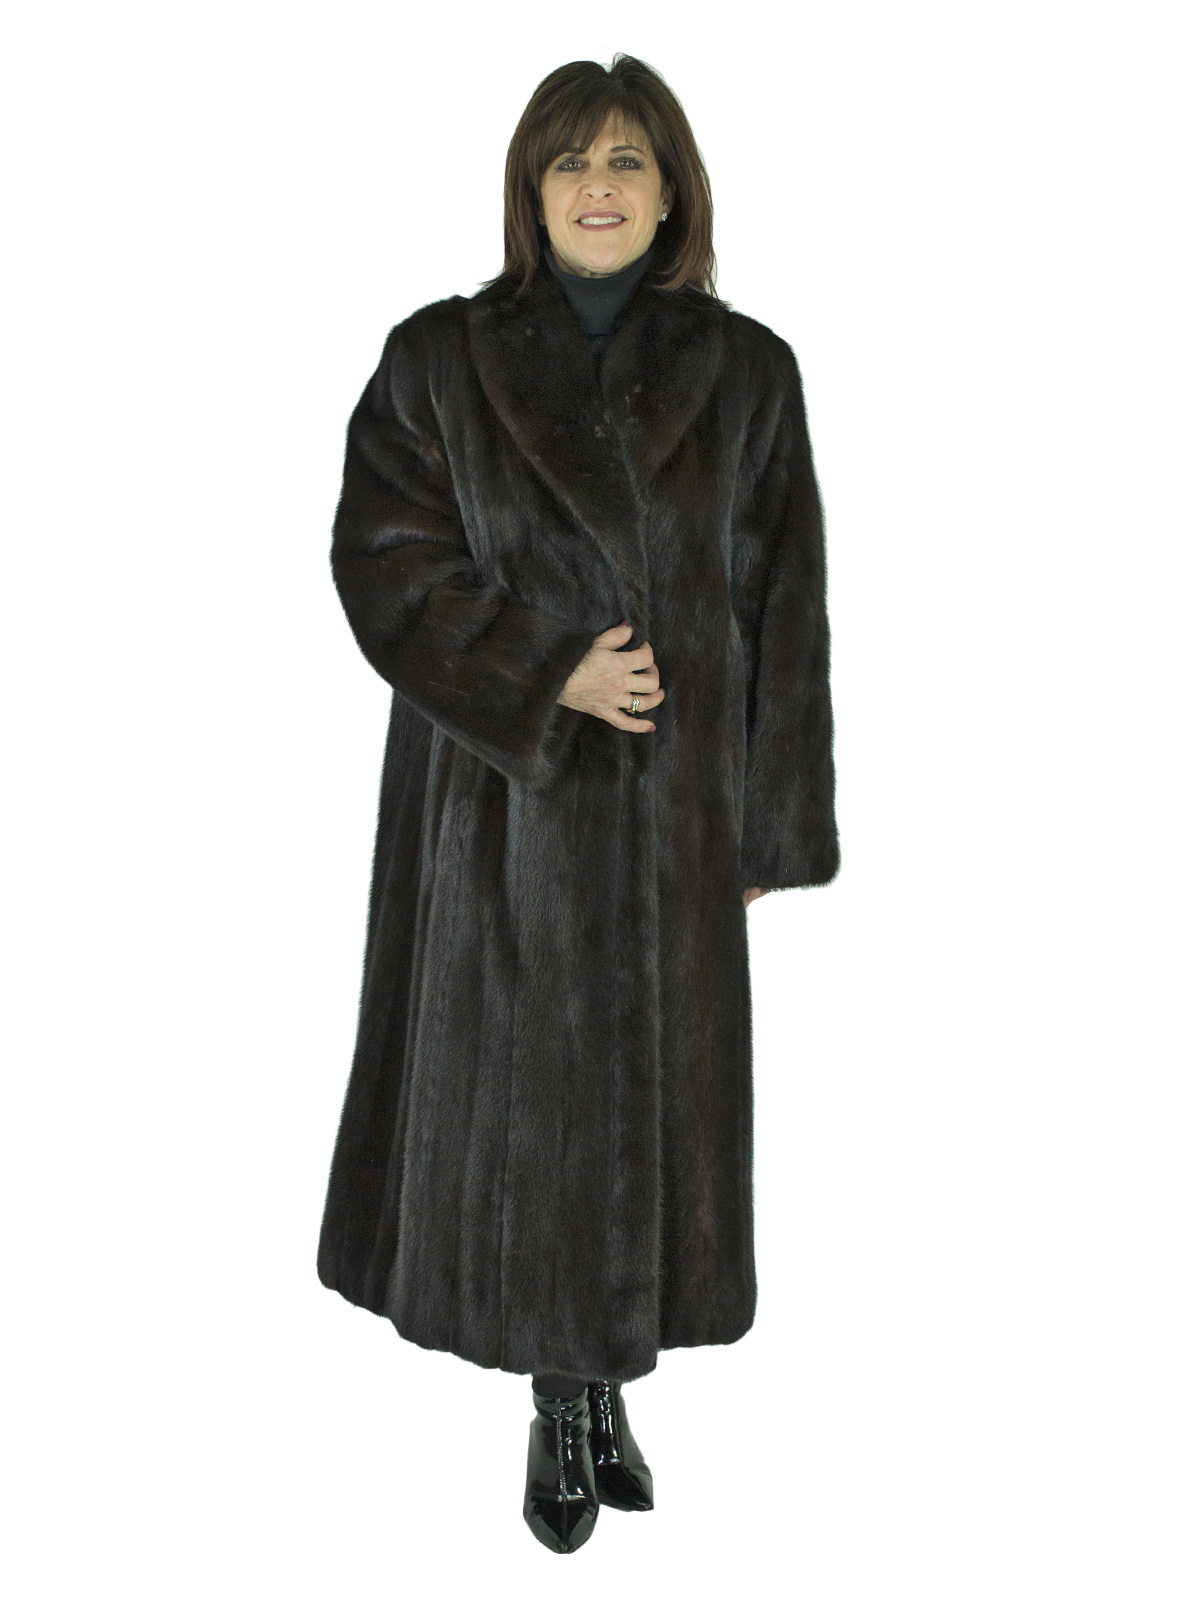 Woman's Ranch Mink Fur Coat - Women's Mink Coat - XL Estate Furs